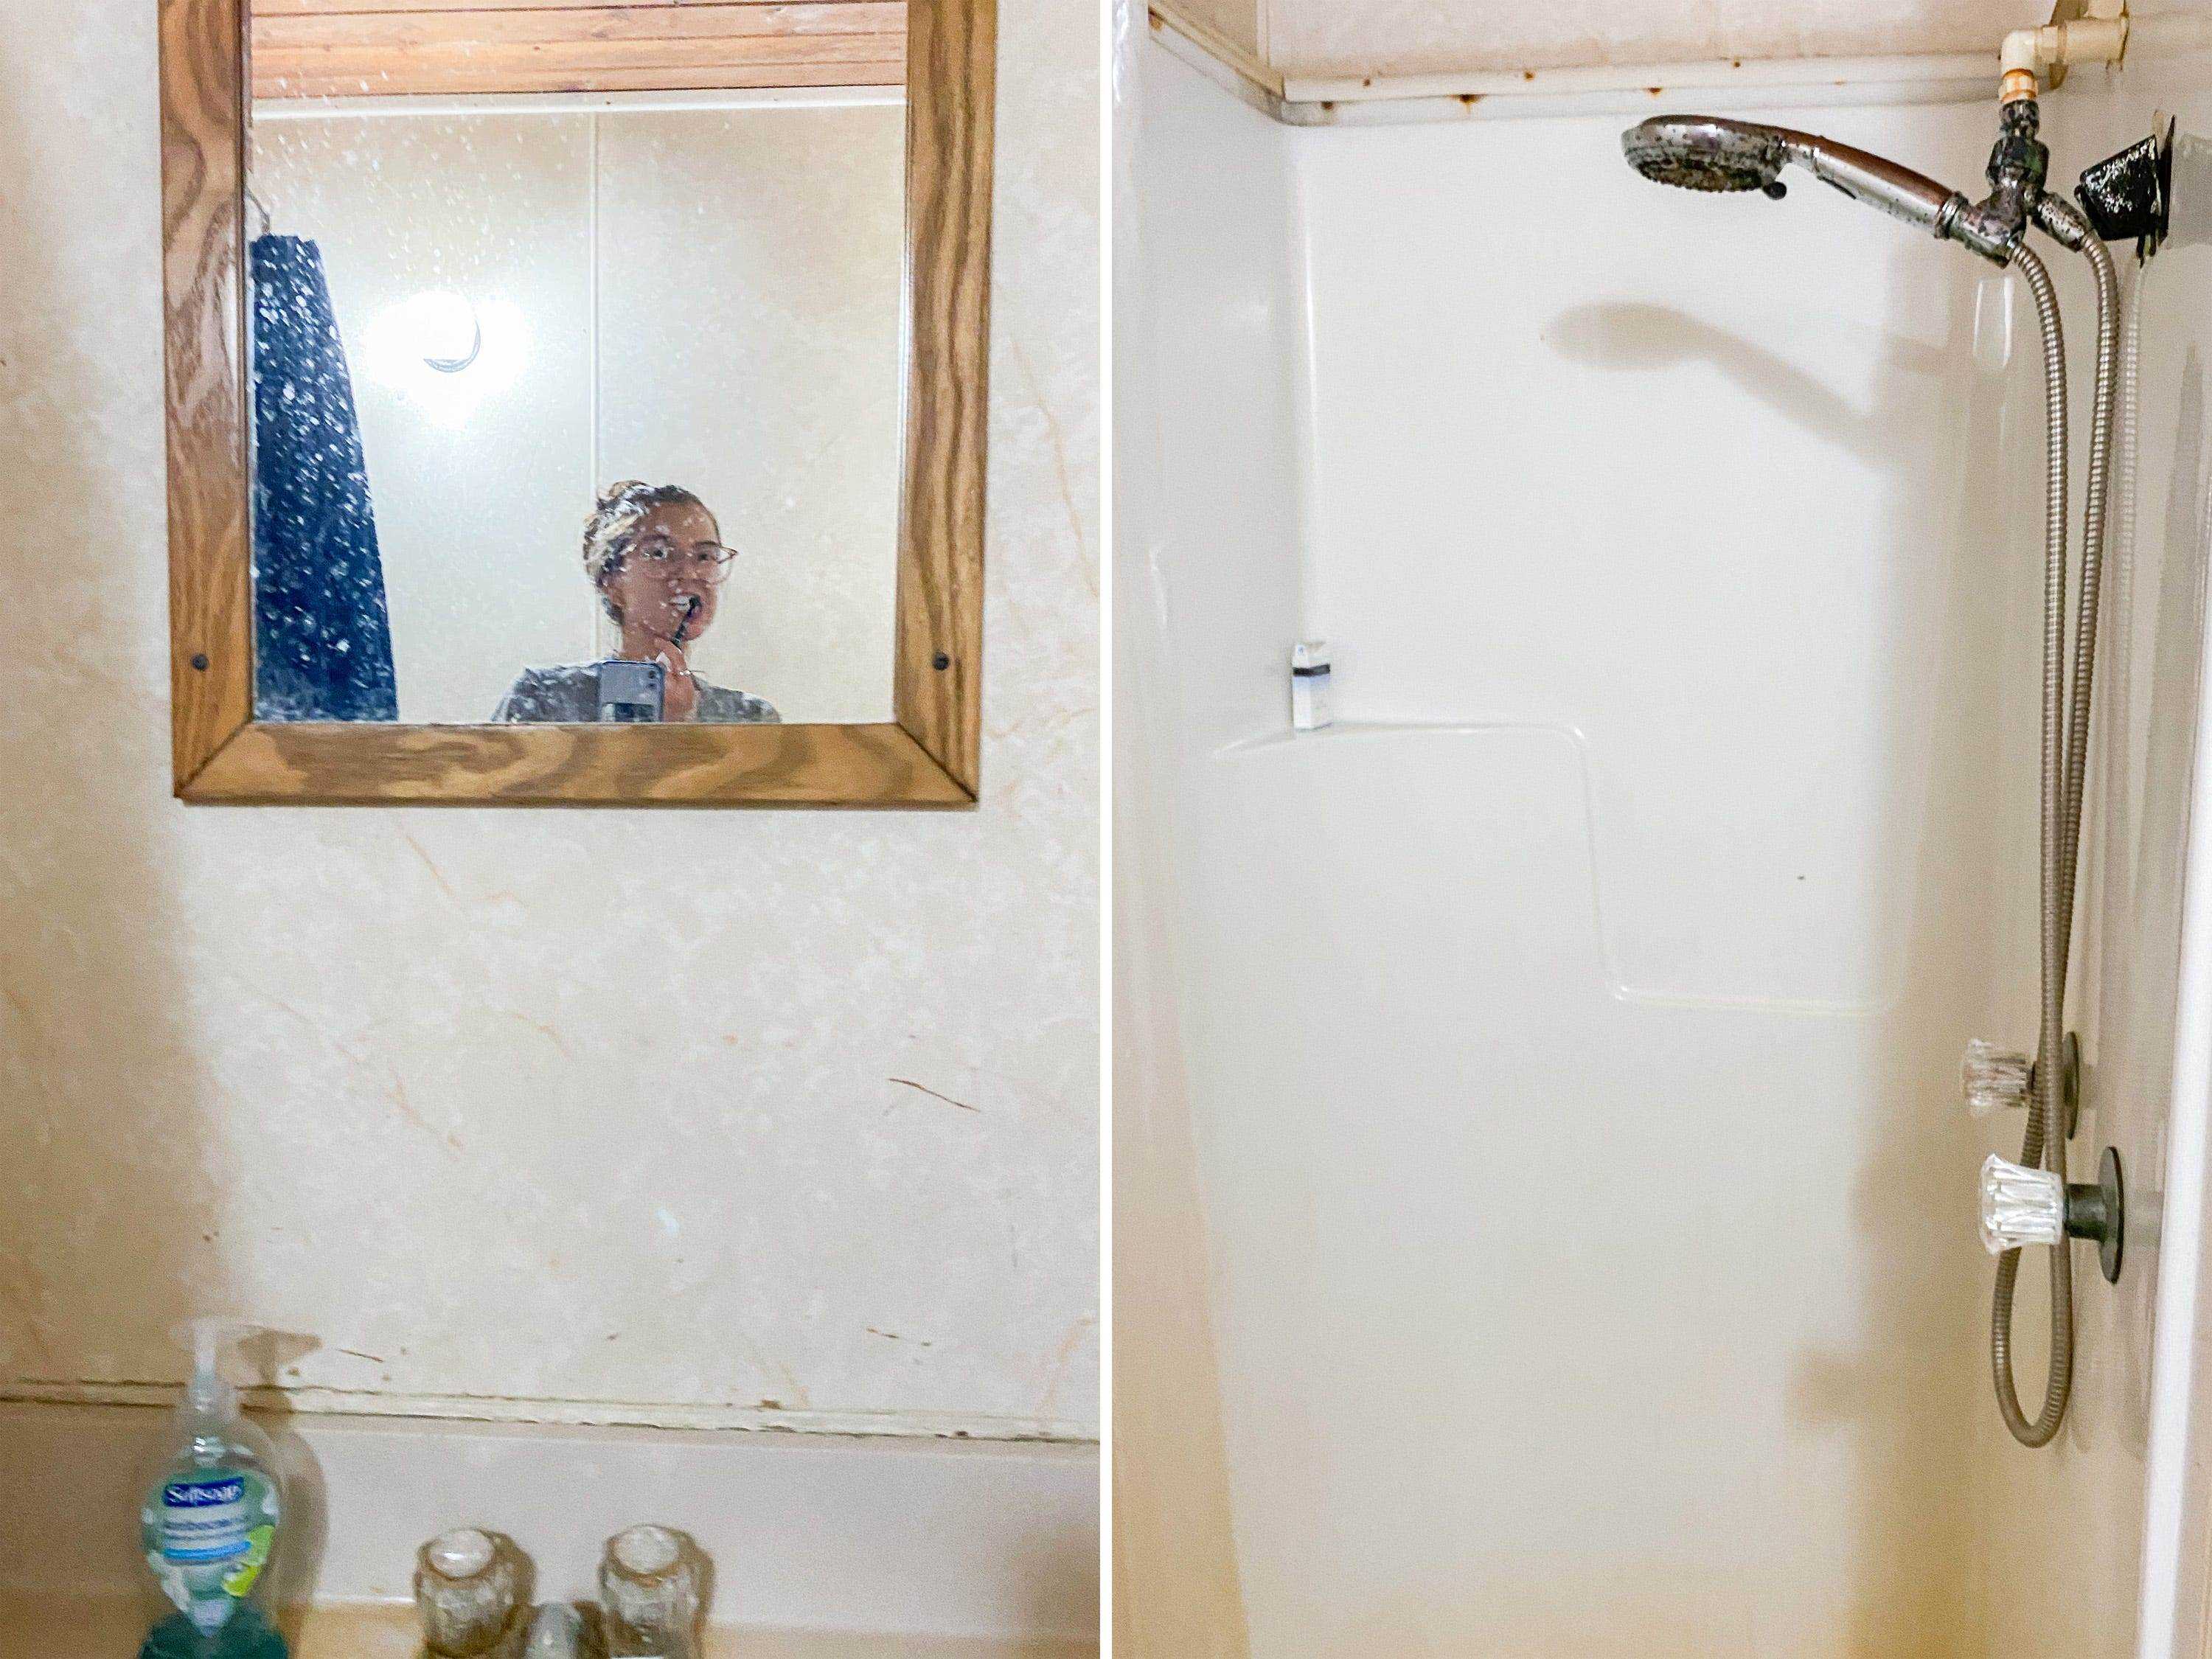 Fotos nebeneinander zeigen Waschbecken, Spiegel und Dusche